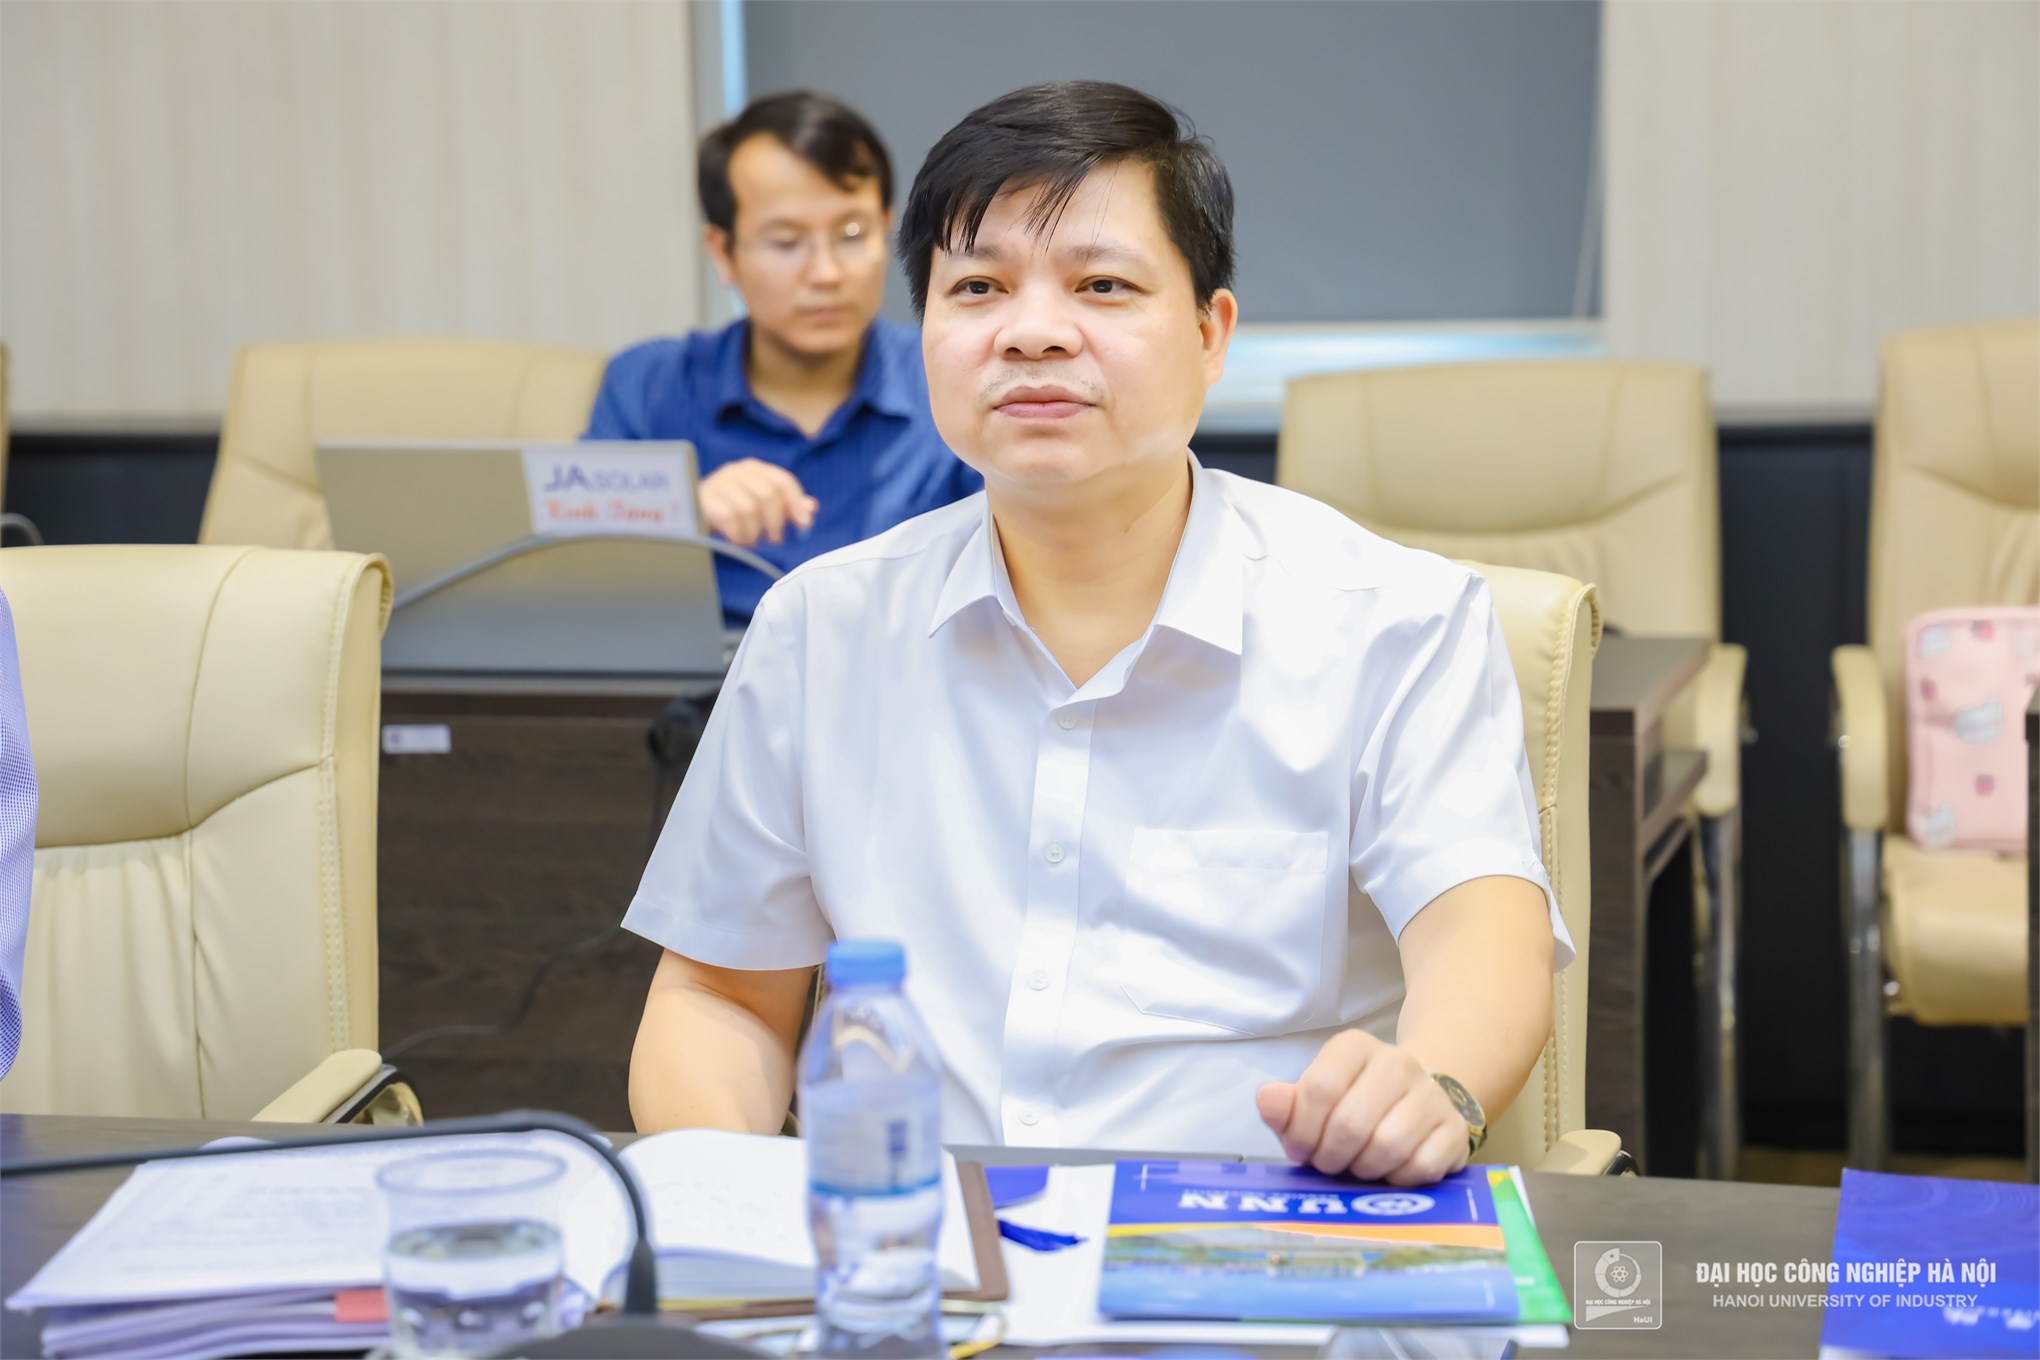 Đại học Công nghiệp Hà Nội mở rộng liên kết đào tạo quốc tế với Đại học Nam Ninh, Trung Quốc